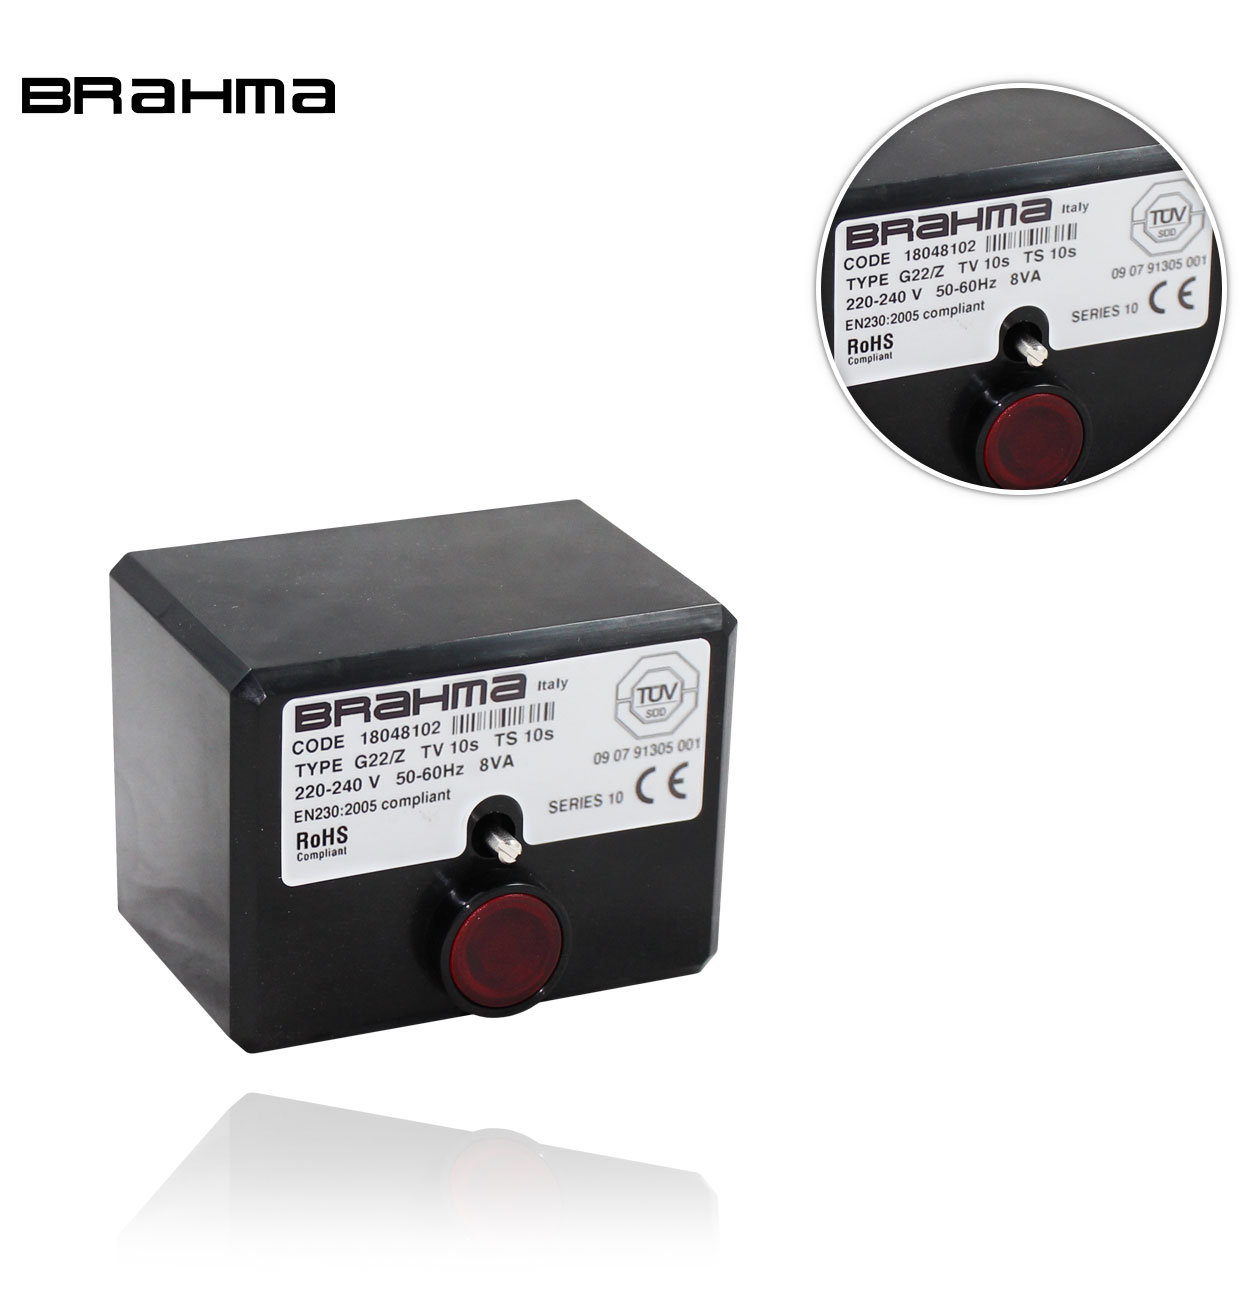 G22/Z S10 TW10 TS10 (GF33 S03) BRAHMA CONTROL BOX